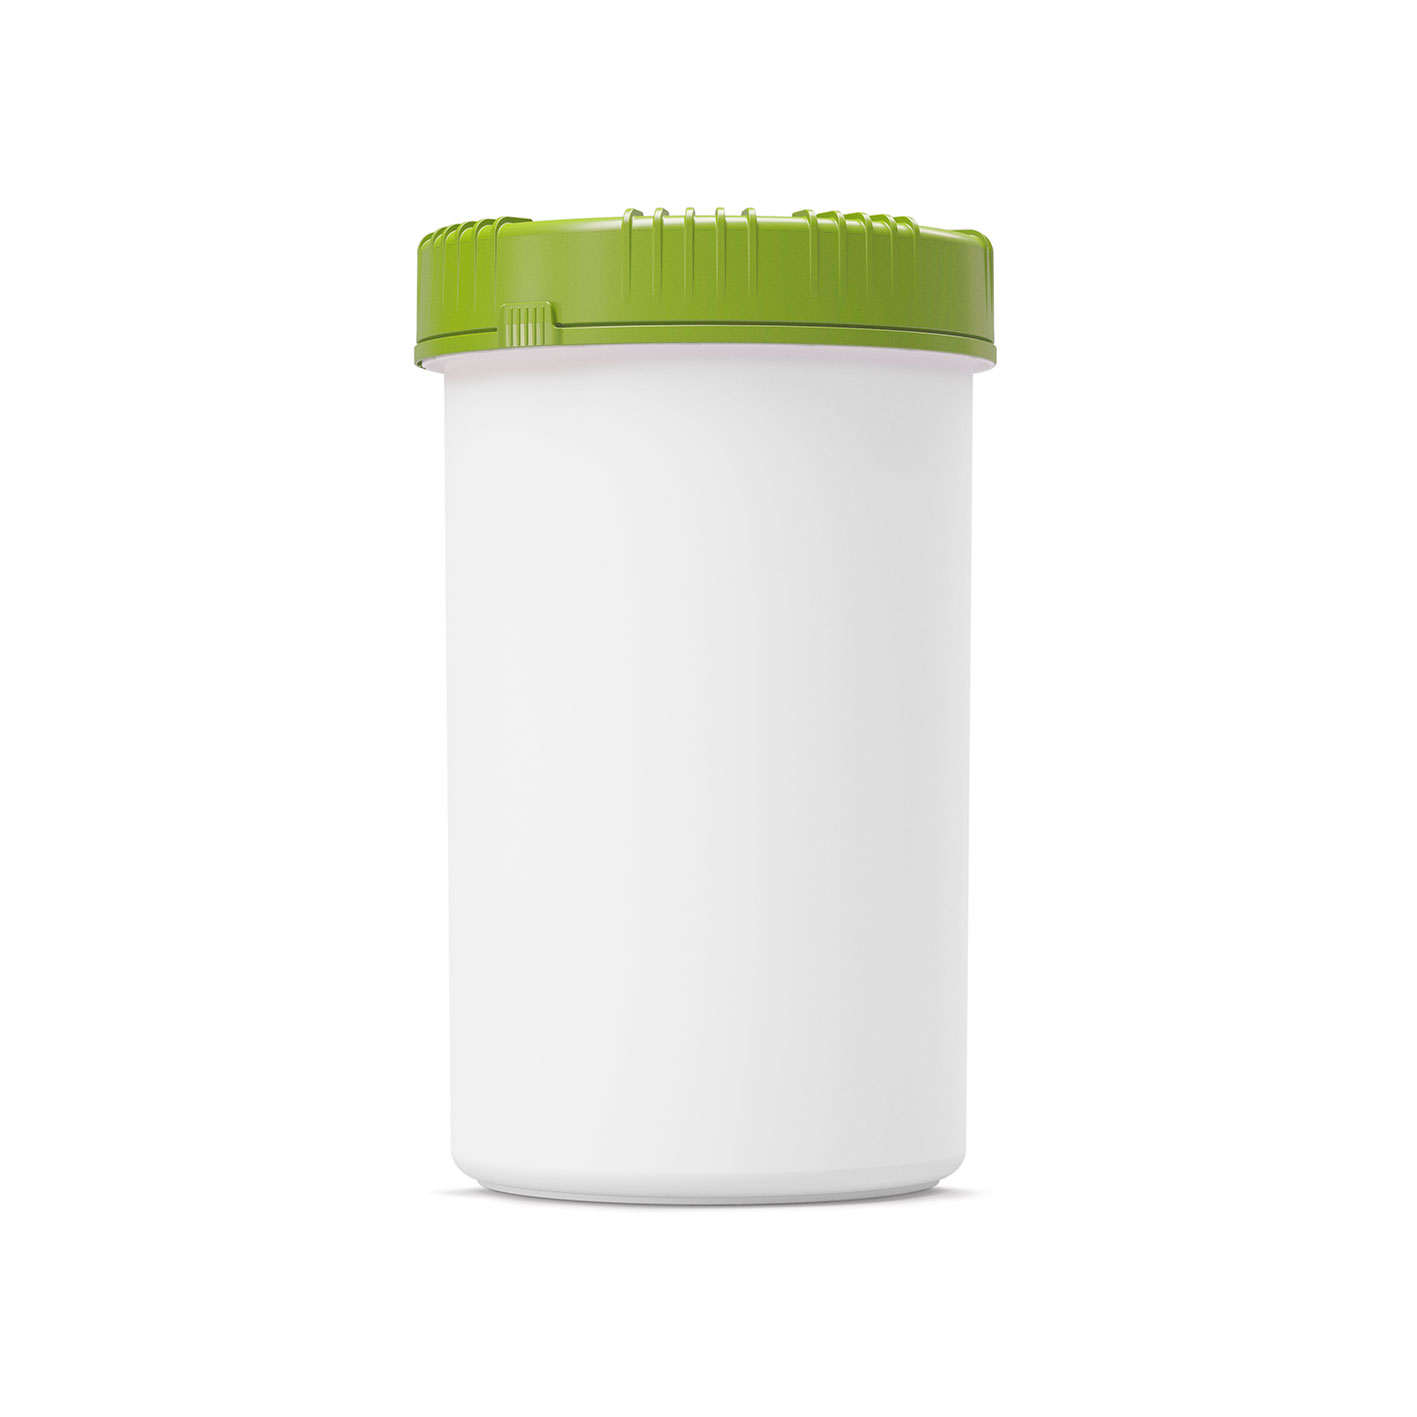 Lid for 1 Quart Plastic Container 1 gram